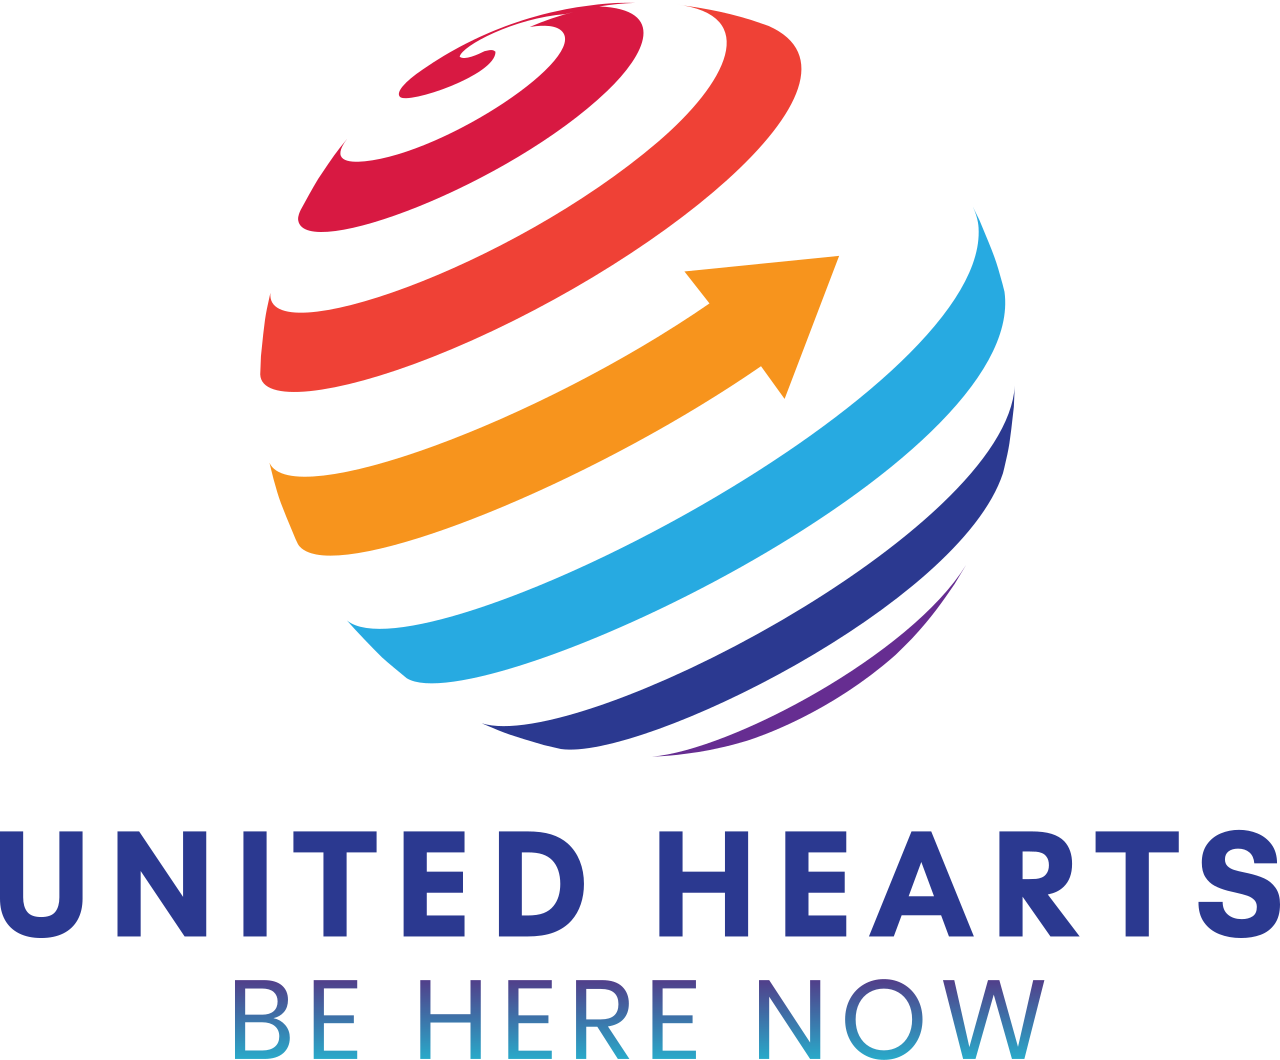 United Hearts's logo